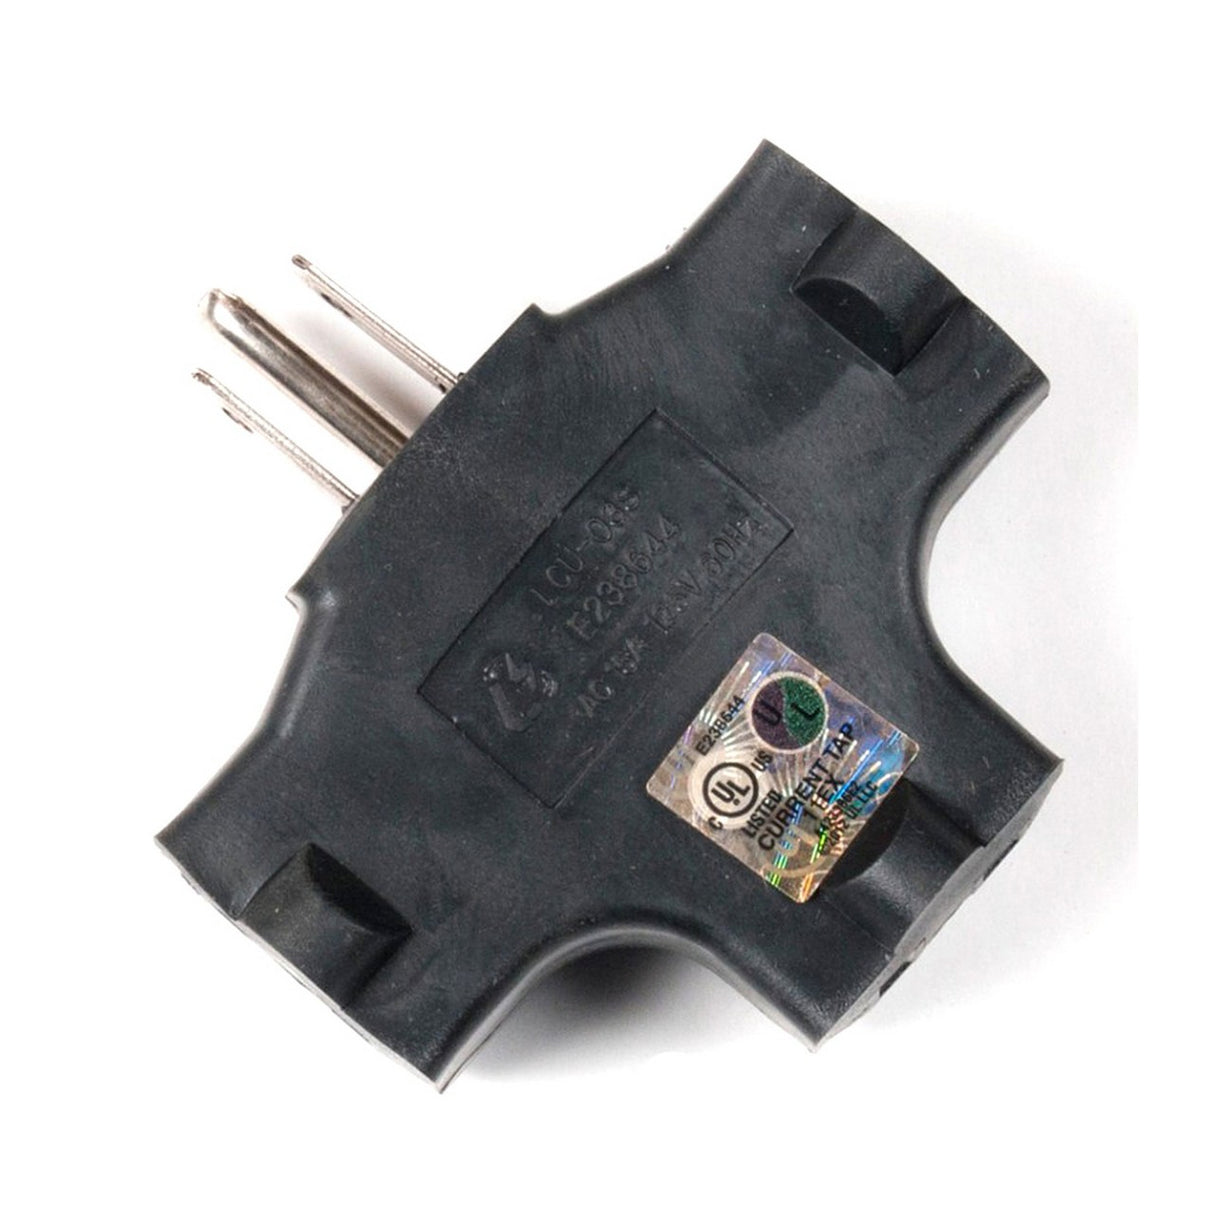 Accu Cable EC3FER | Black Edison 3Fer Tri Tap Adapter